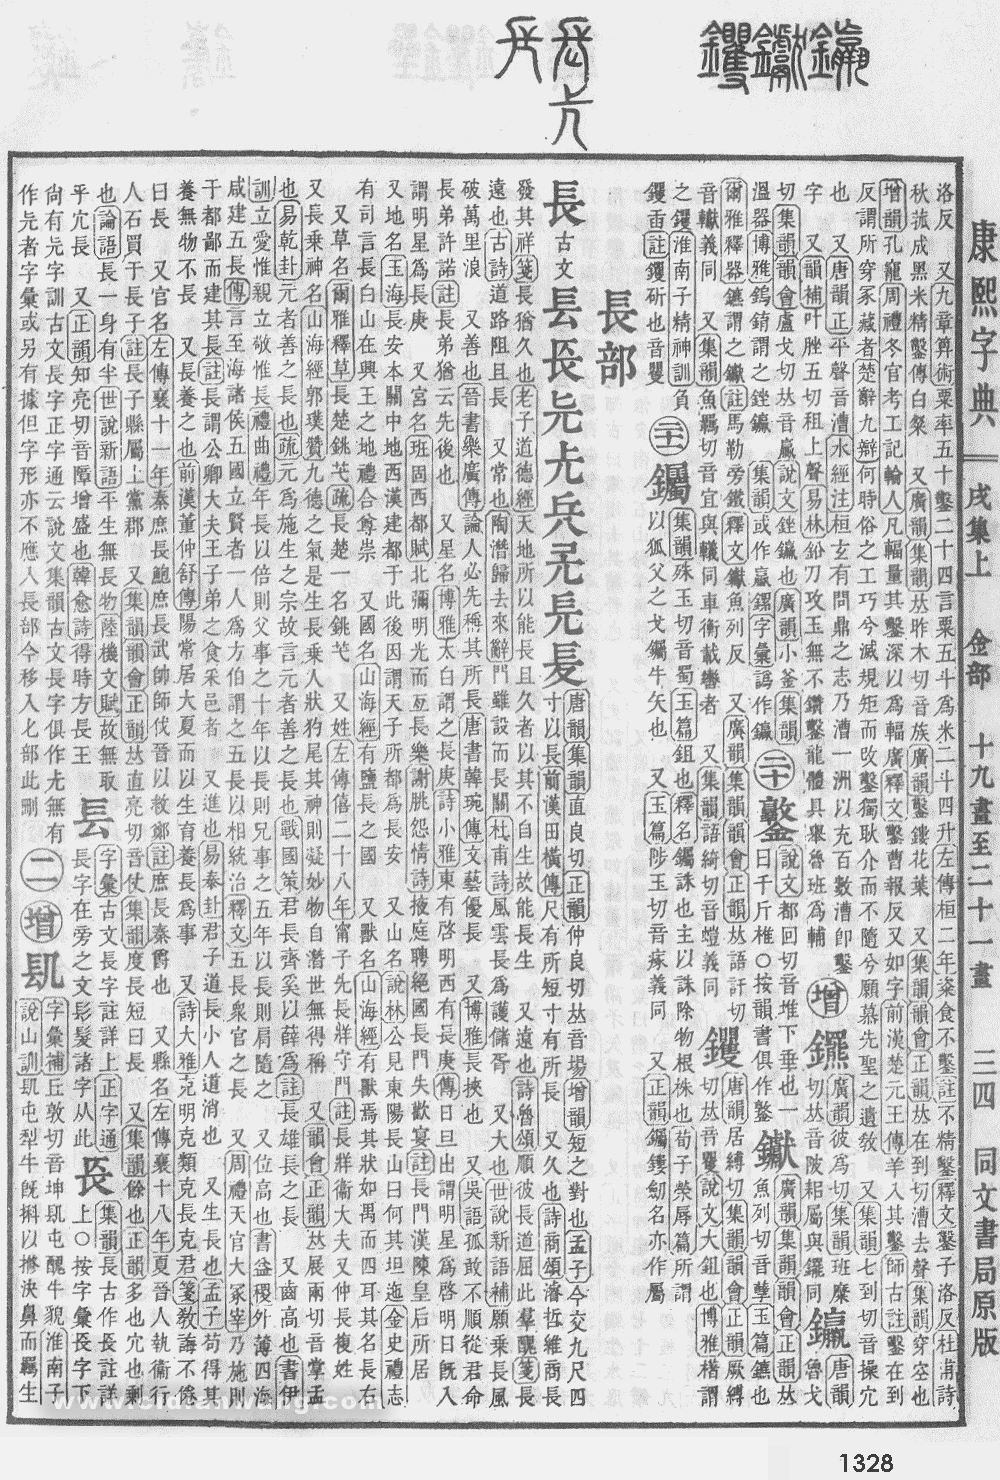 康熙字典掃描版第1328頁